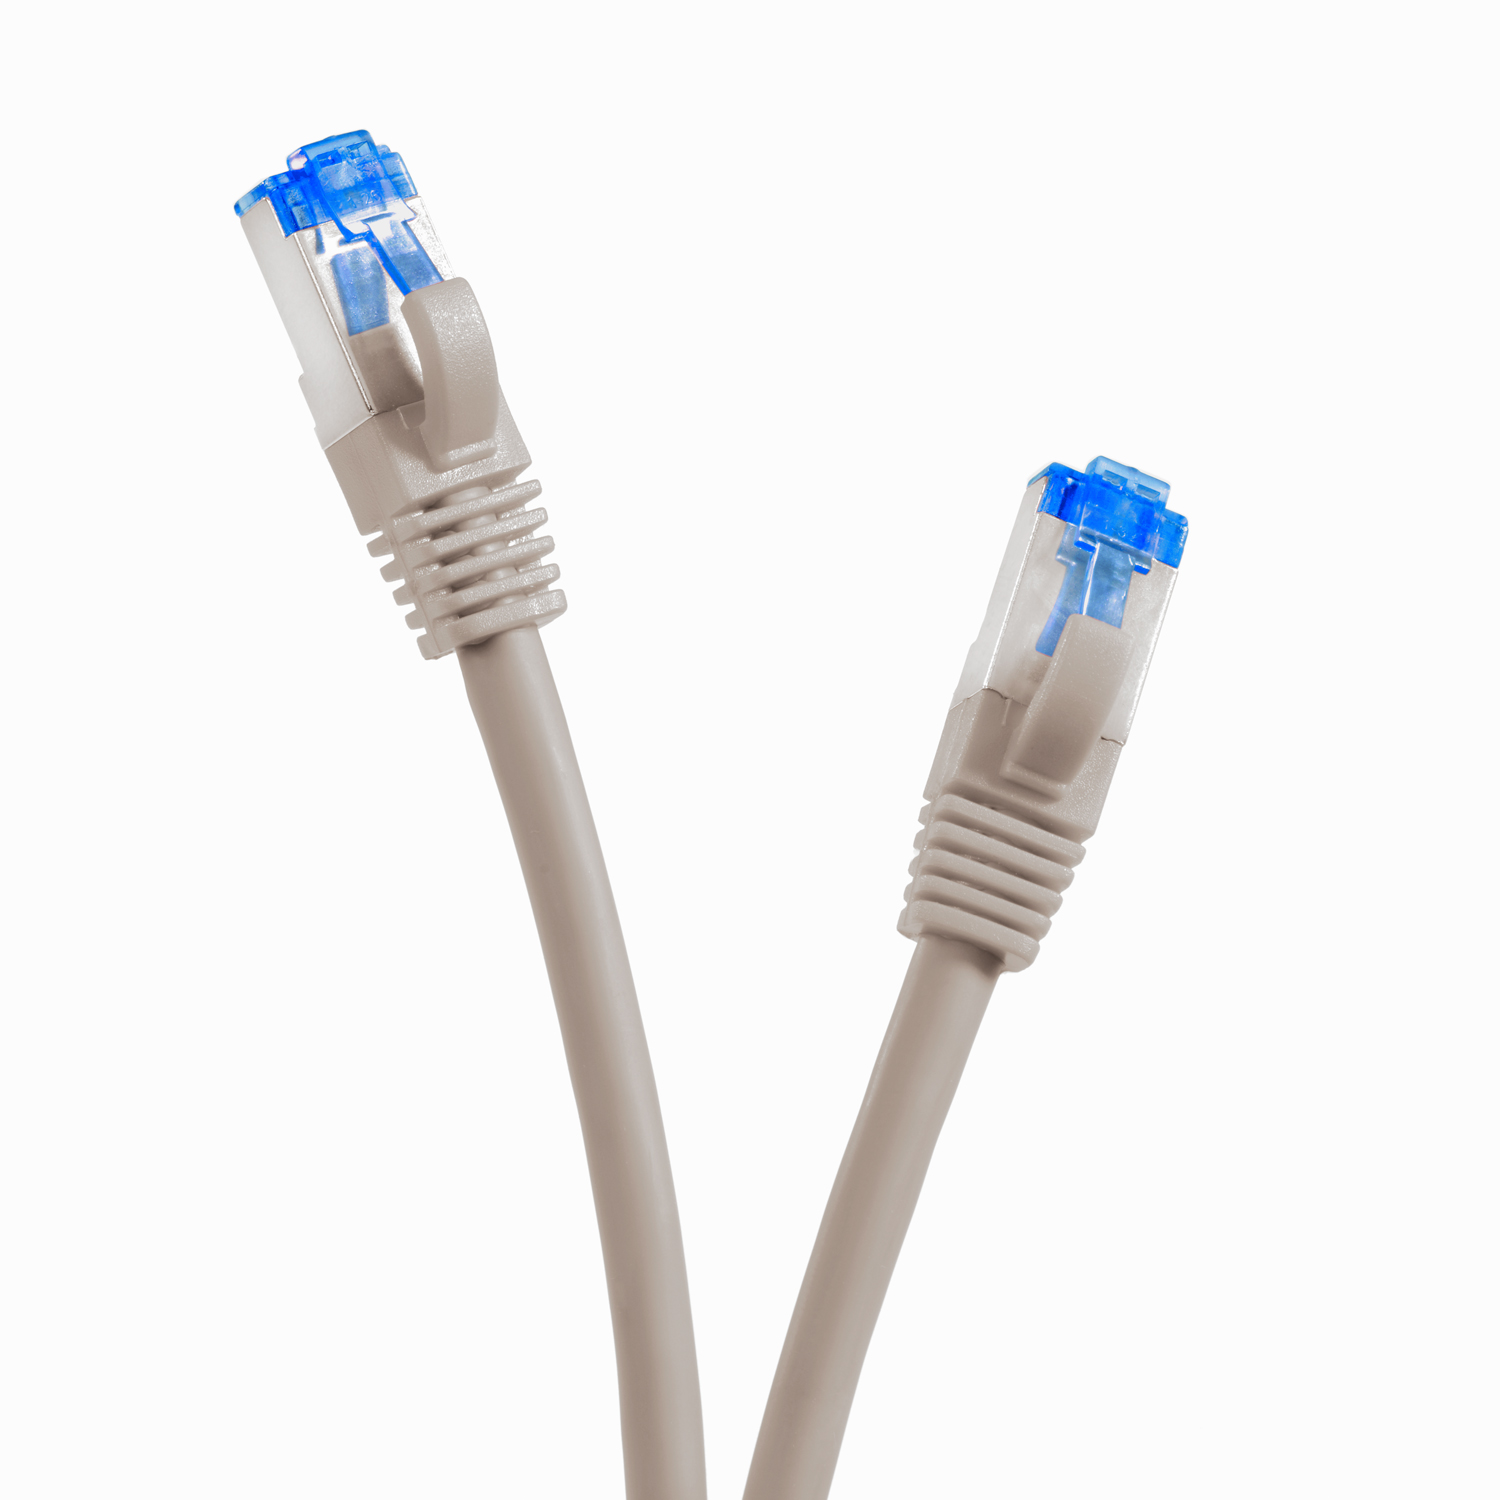 Netzwerkkabel, 10GBit, 5er grau, S/FTP Patchkabel / TPFNET 1,5 1,5m Pack m Netzwerkkabel